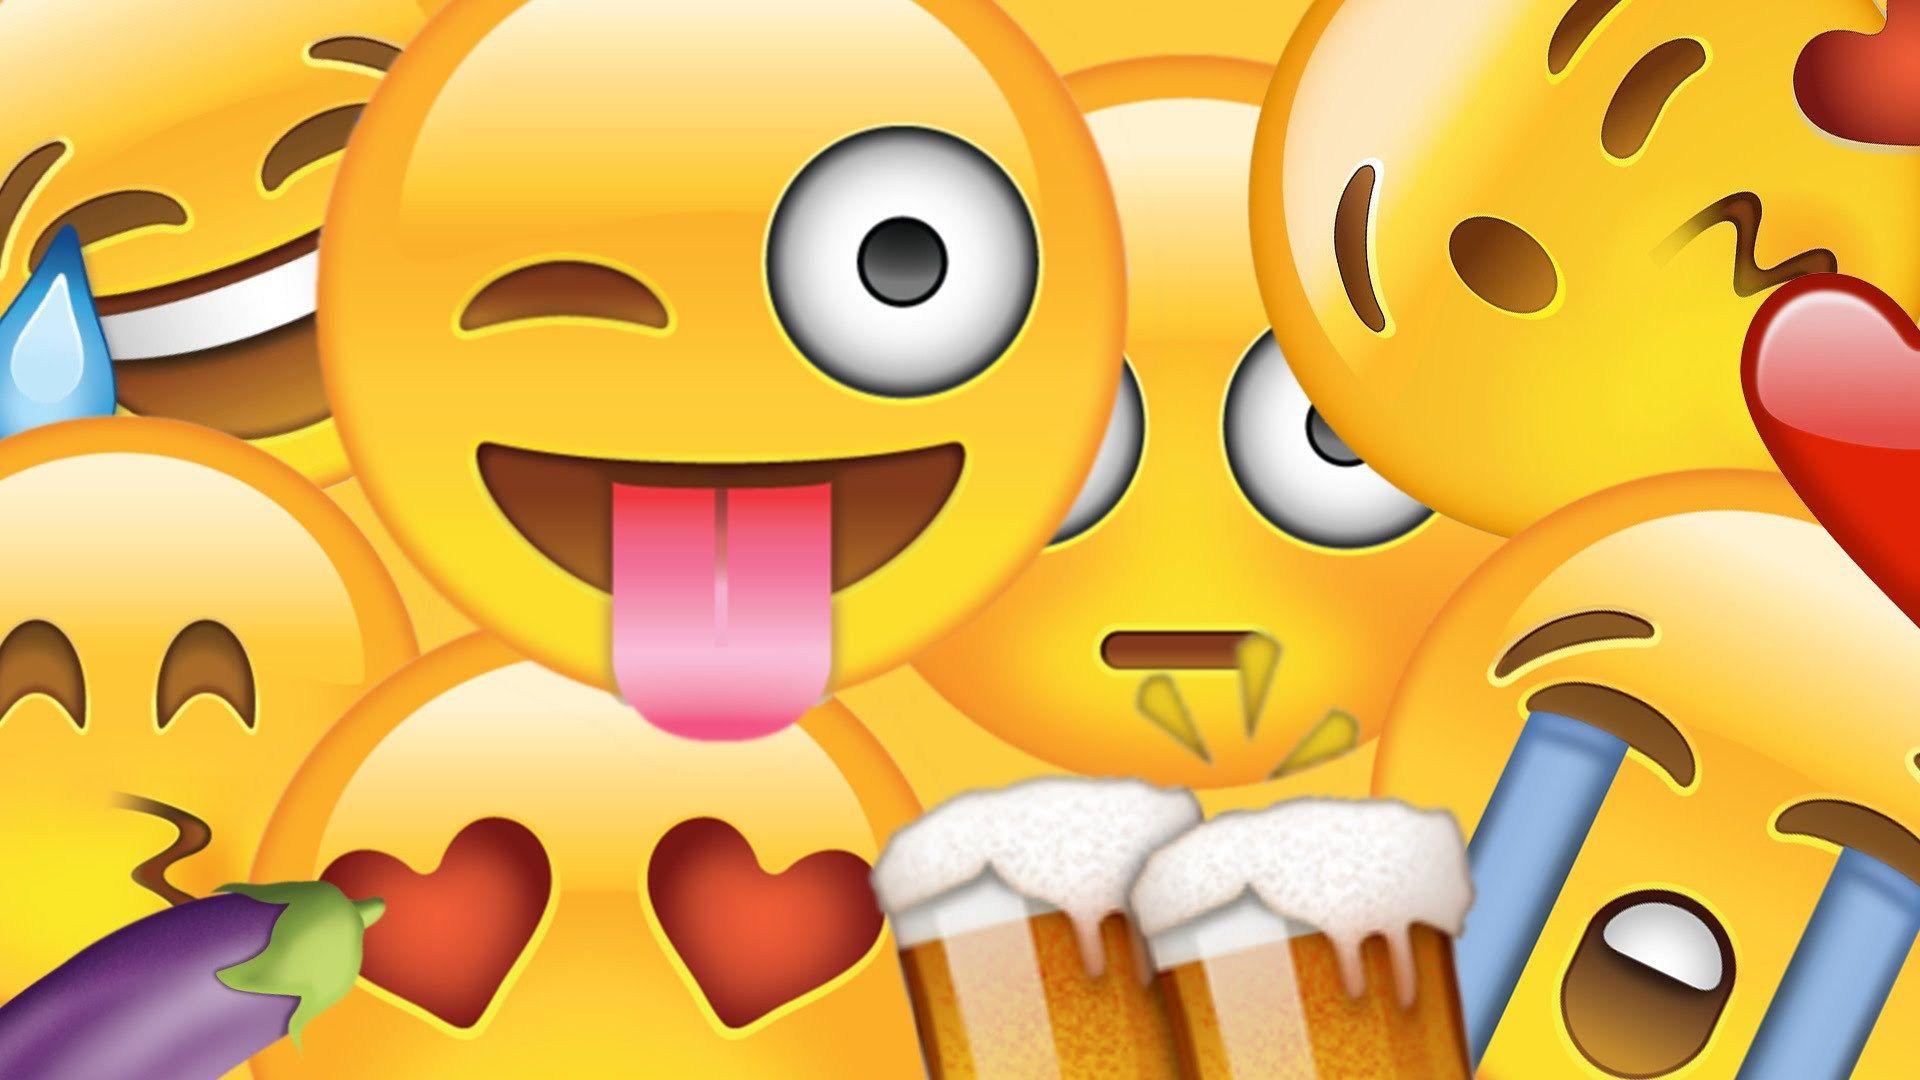 Emoji Wallpapers - Wallpaper Cave